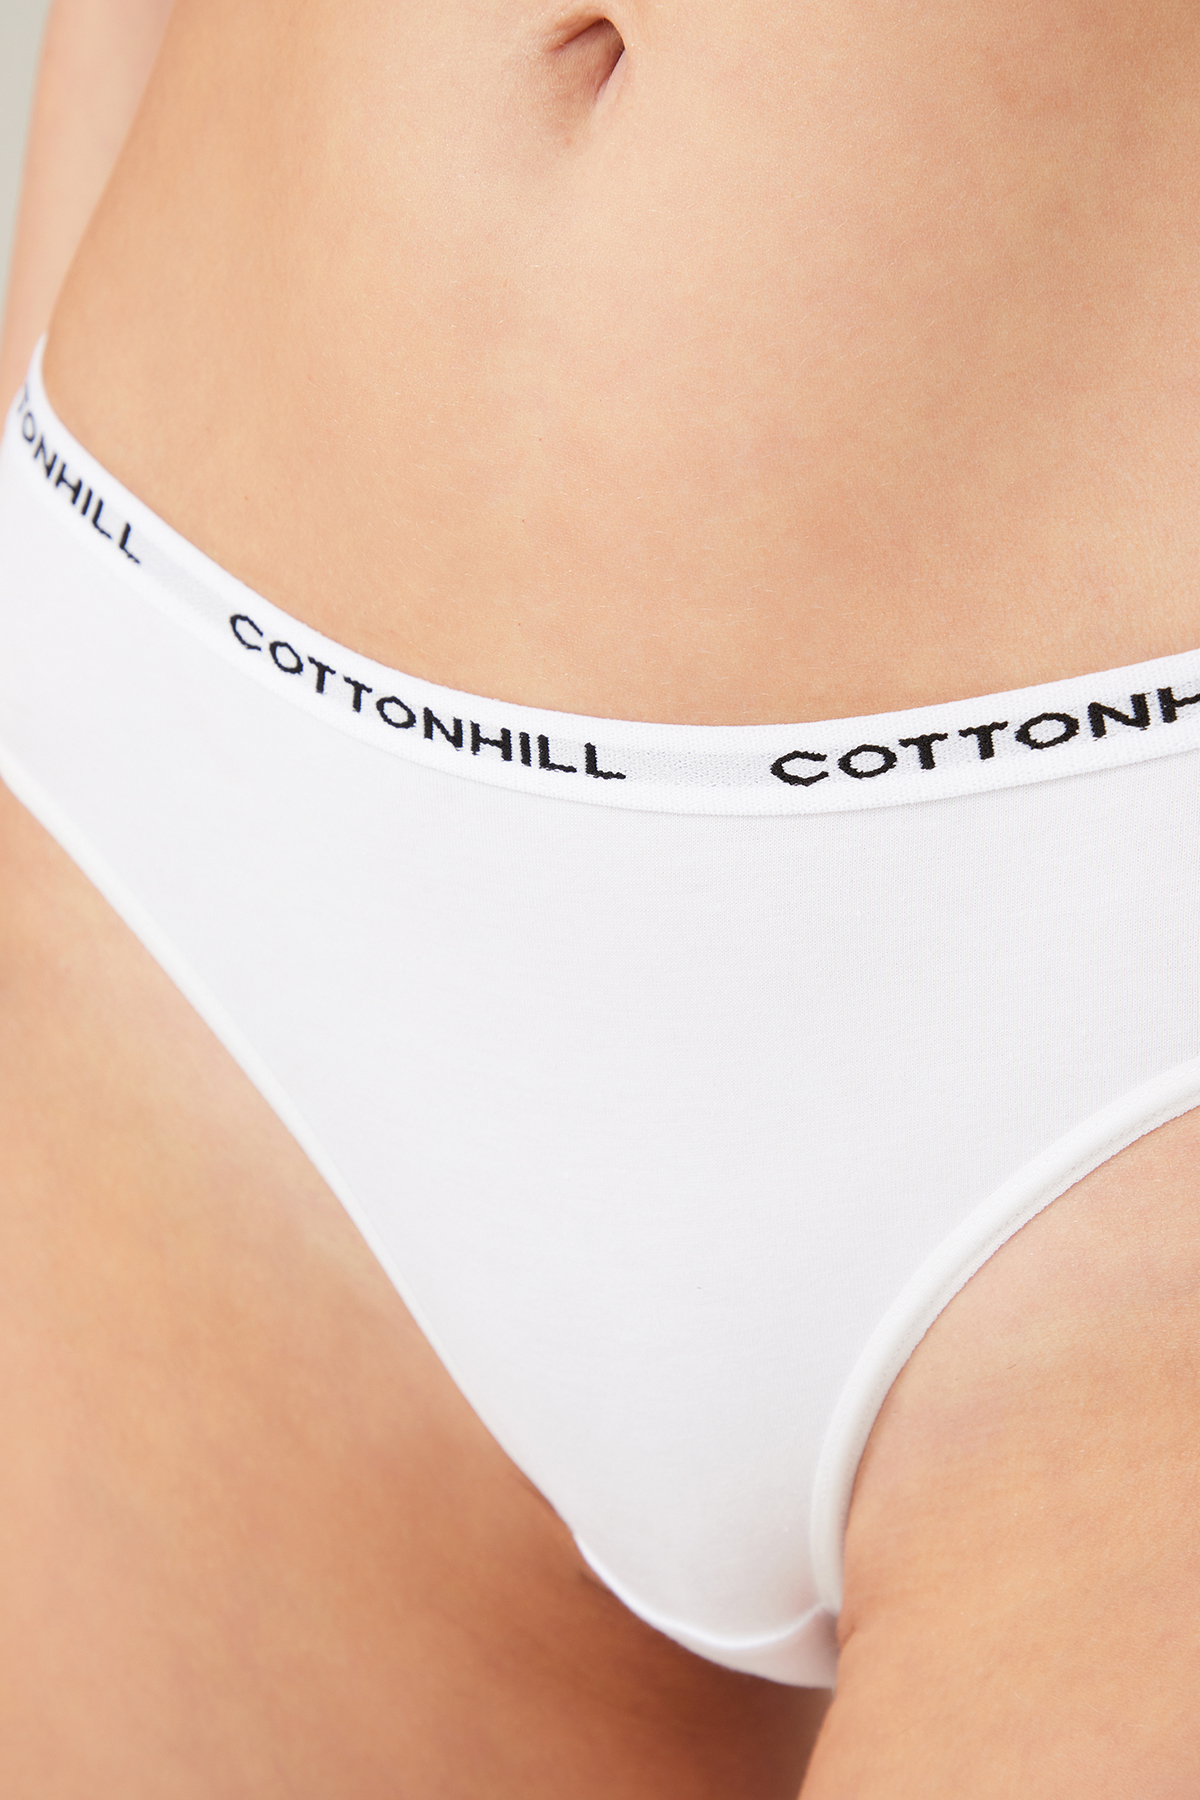 cotton-women-bikini-panty-with-cottonhill-logo-ch6070-white-1-2